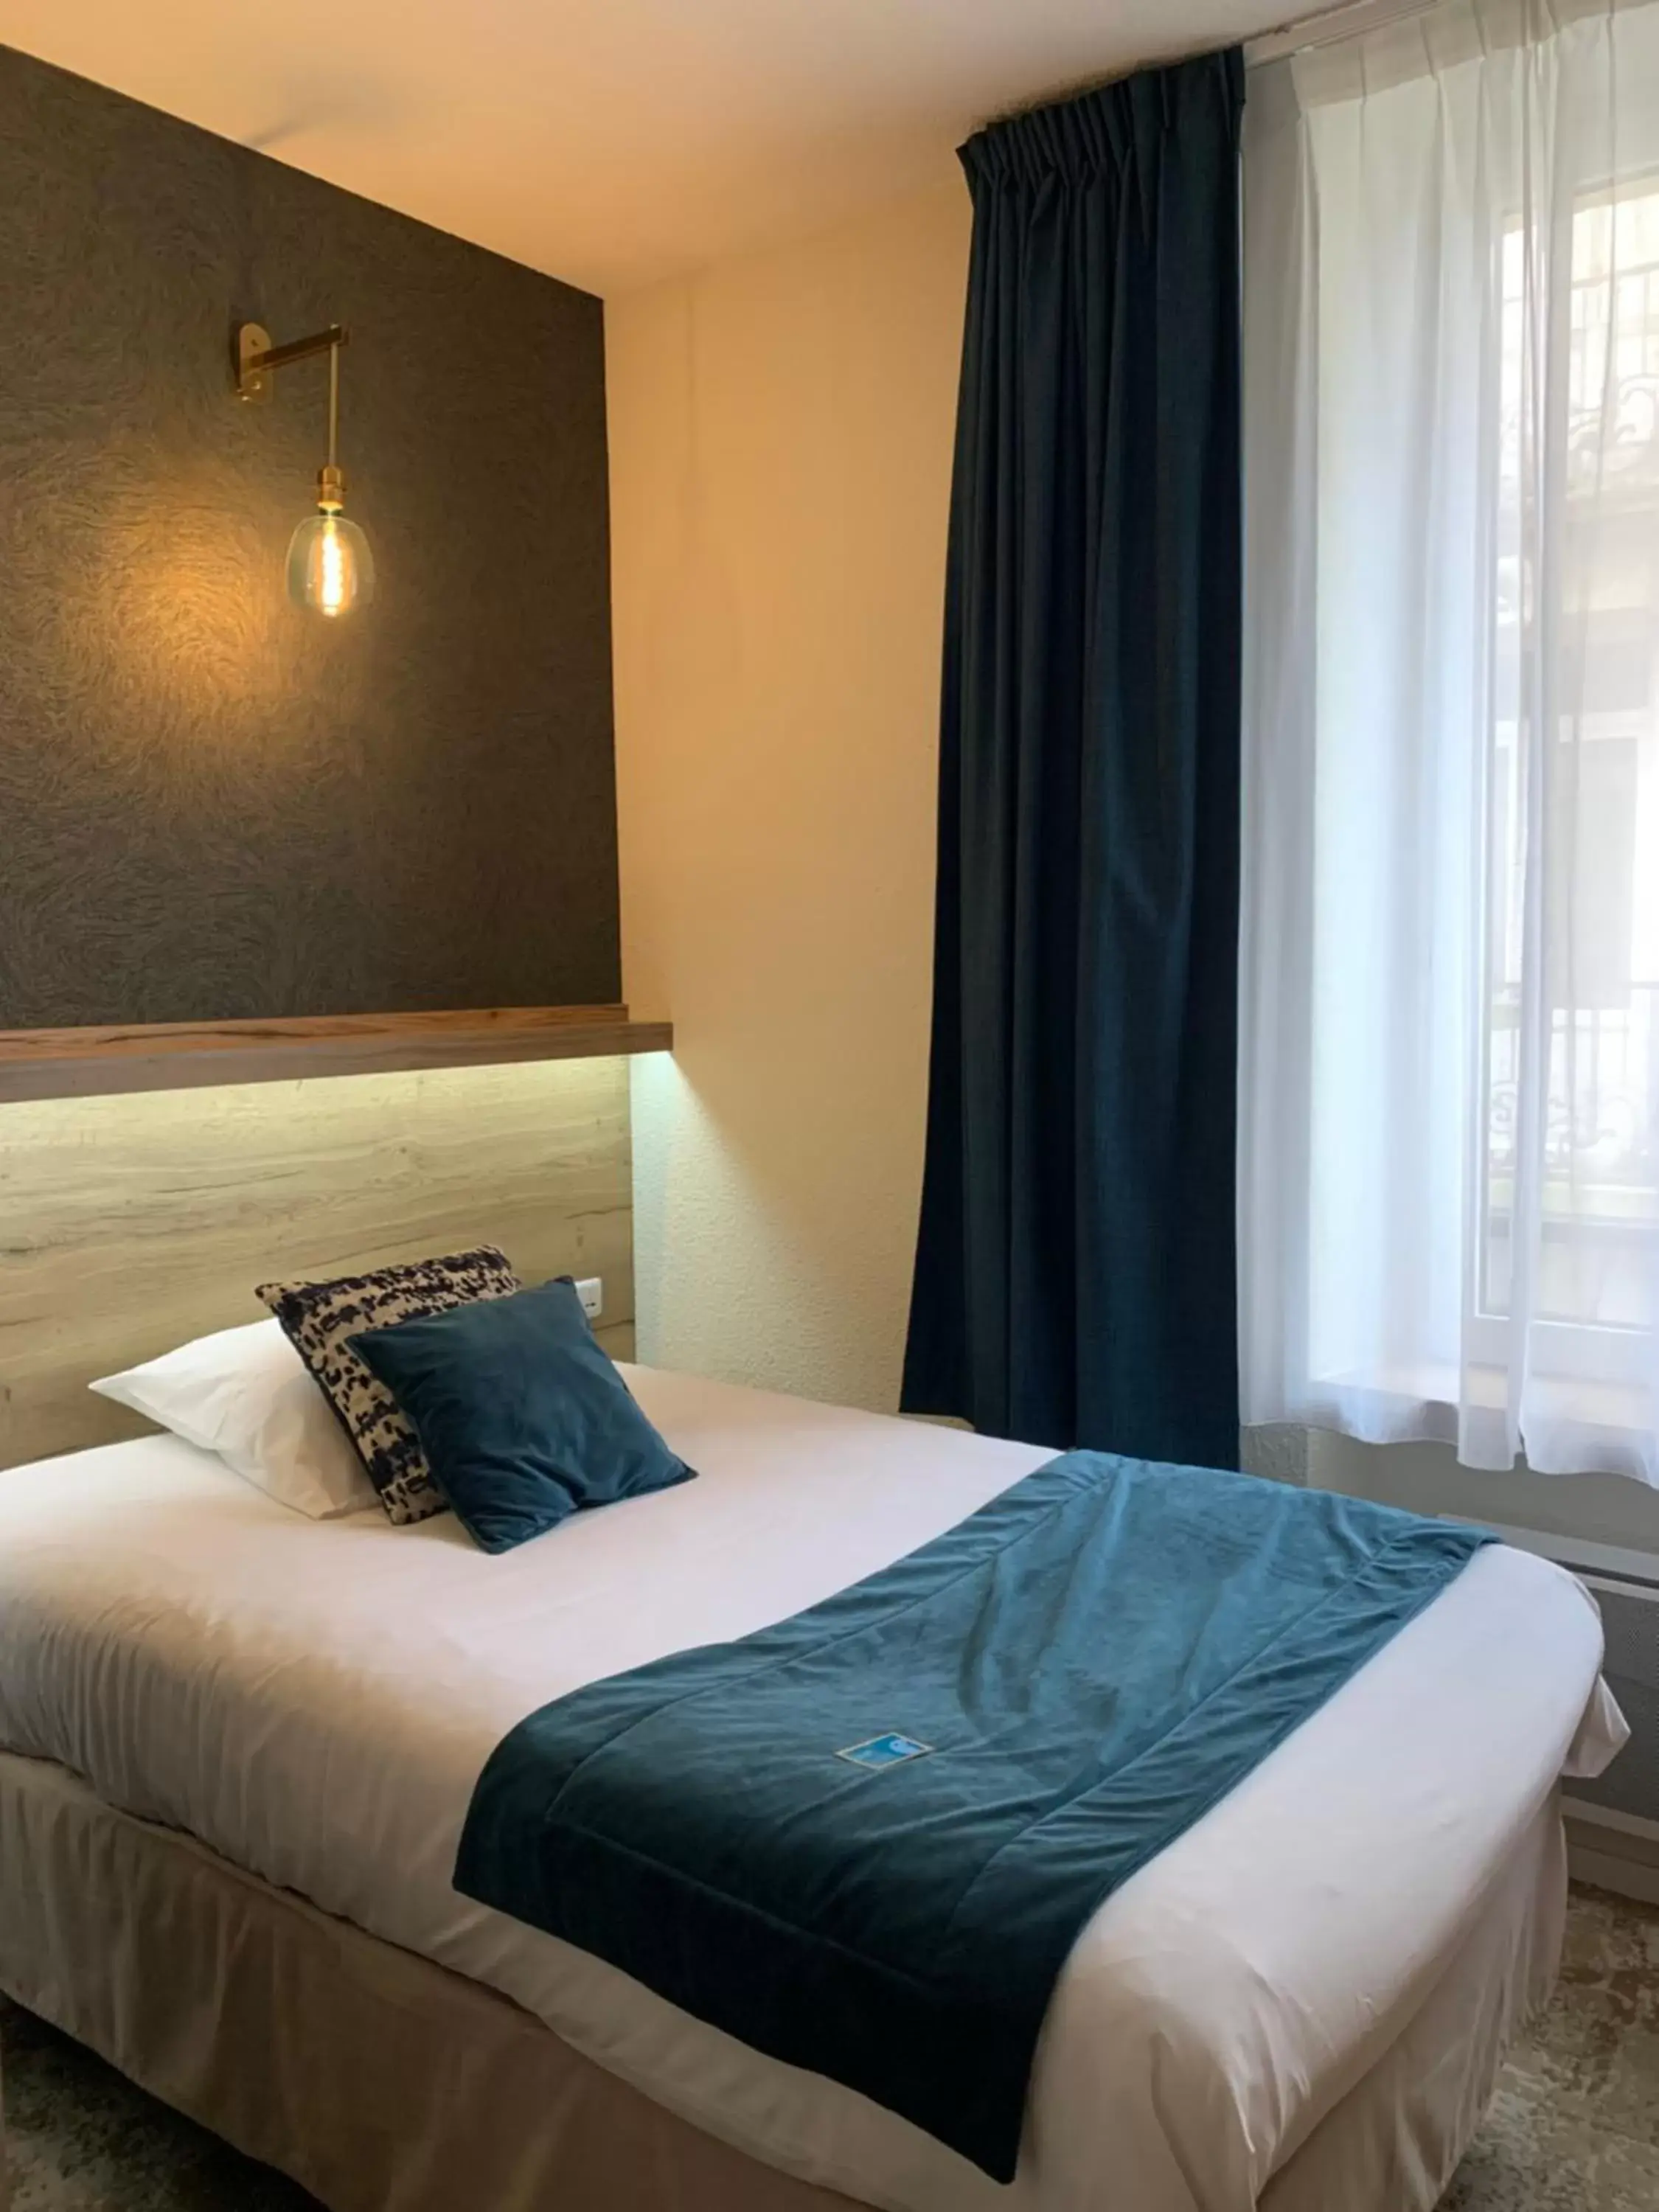 Bedroom, Bed in Ambassadeur Hotel - Cherbourg Port de Plaisance